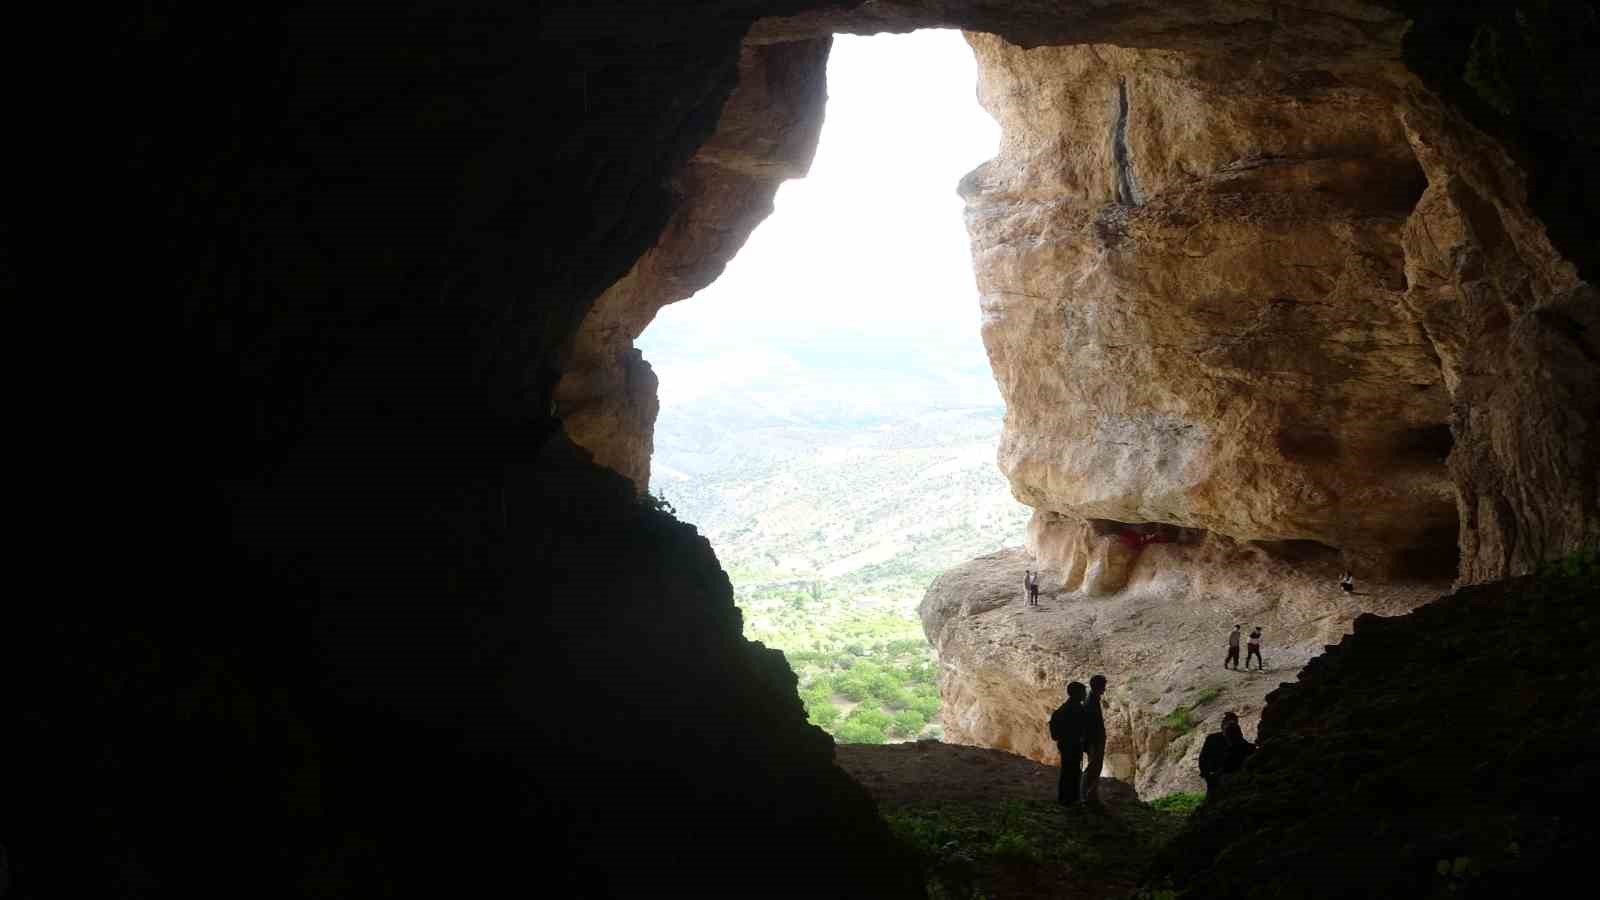 50 milyon yıllık “Küçükkürne mağaraları” şaşırtıyor